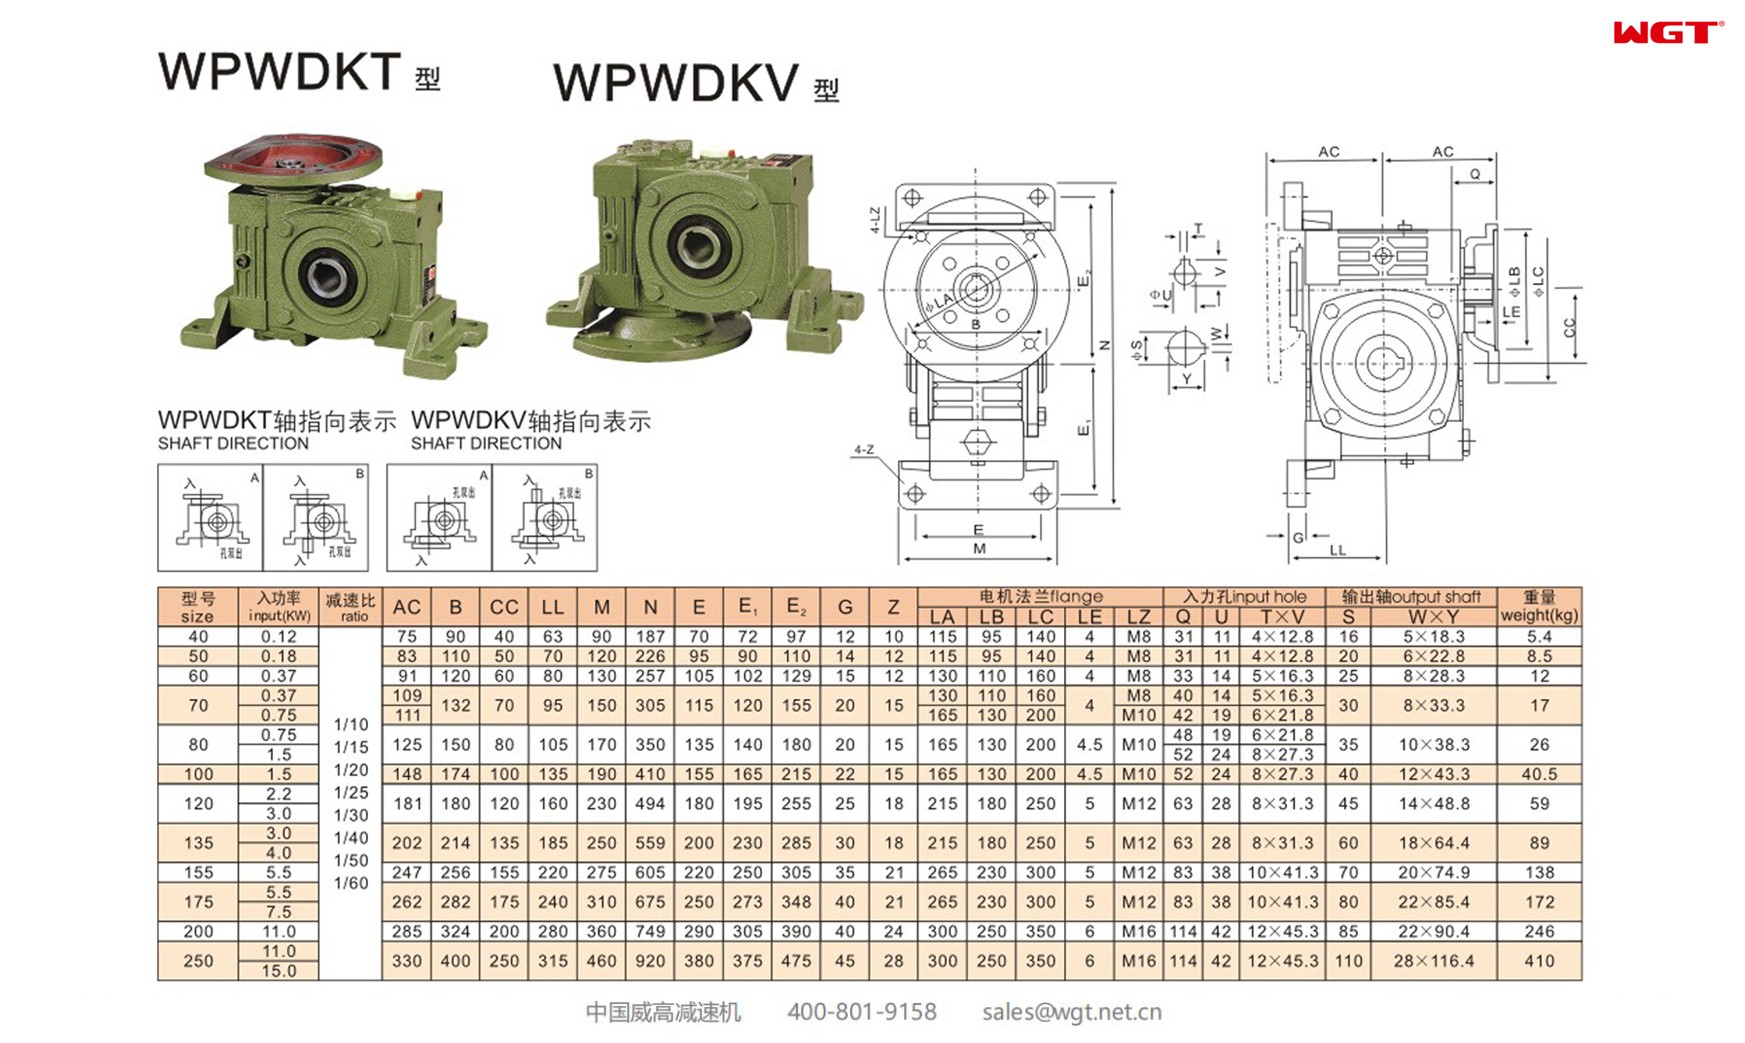 WPWDKV60 worm gear reducer universal speed reducer 